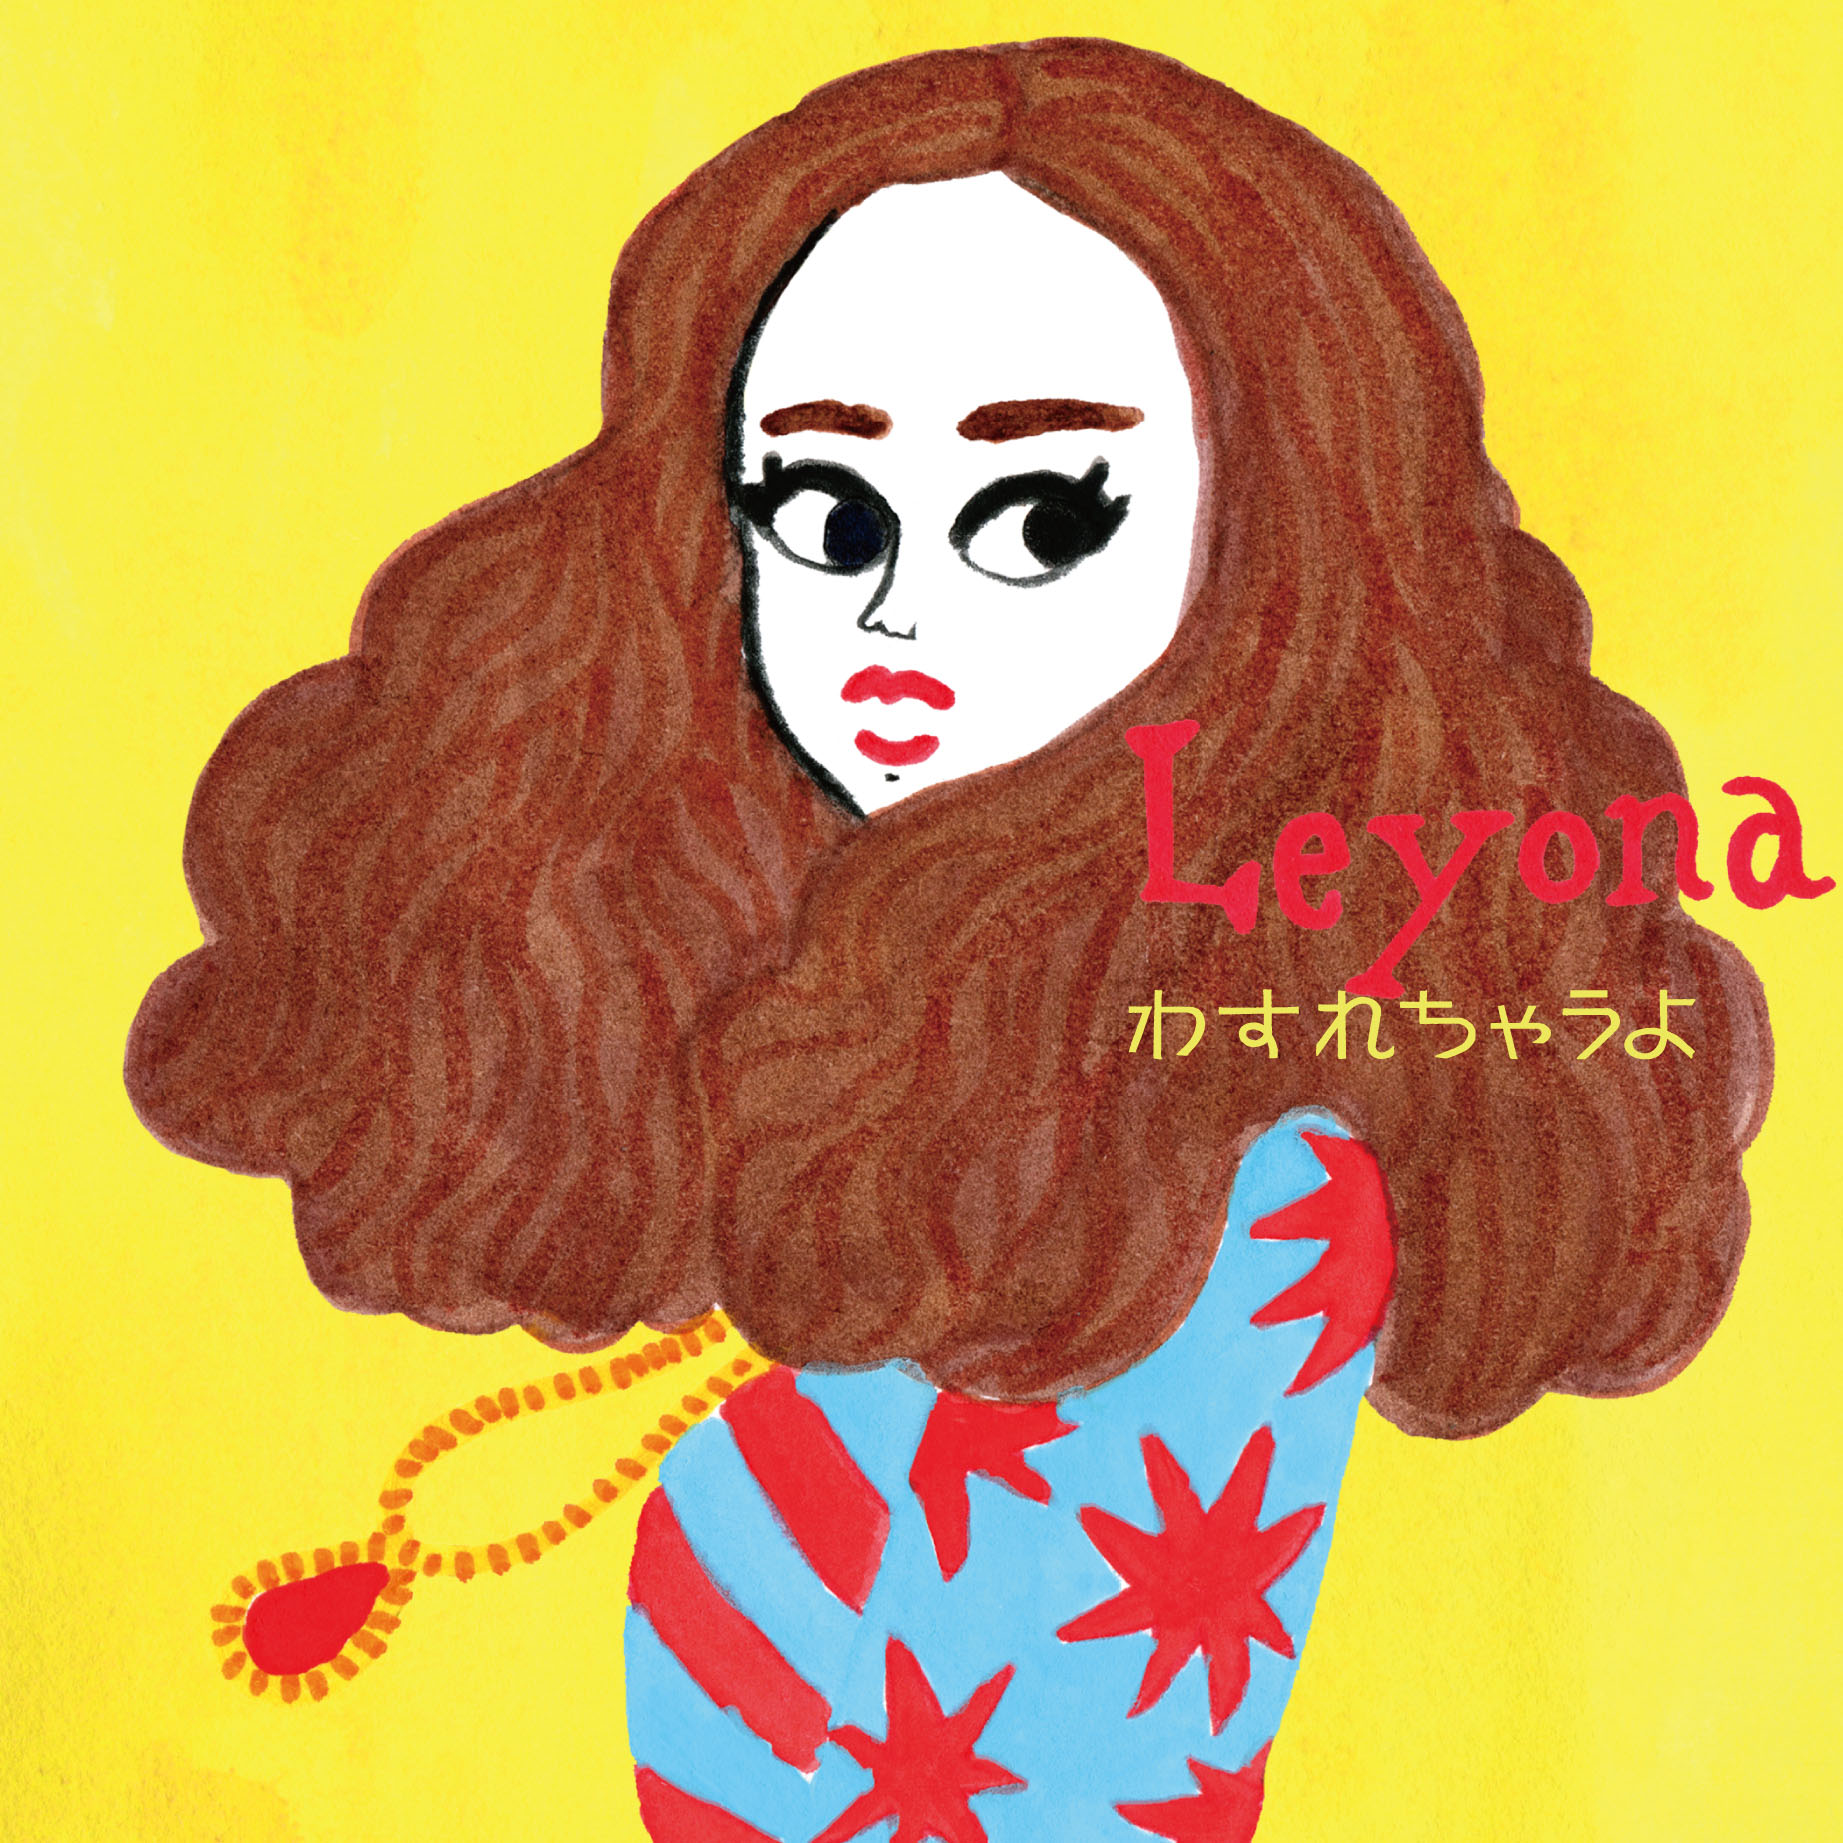 Leyona『わすれちゃうよ』